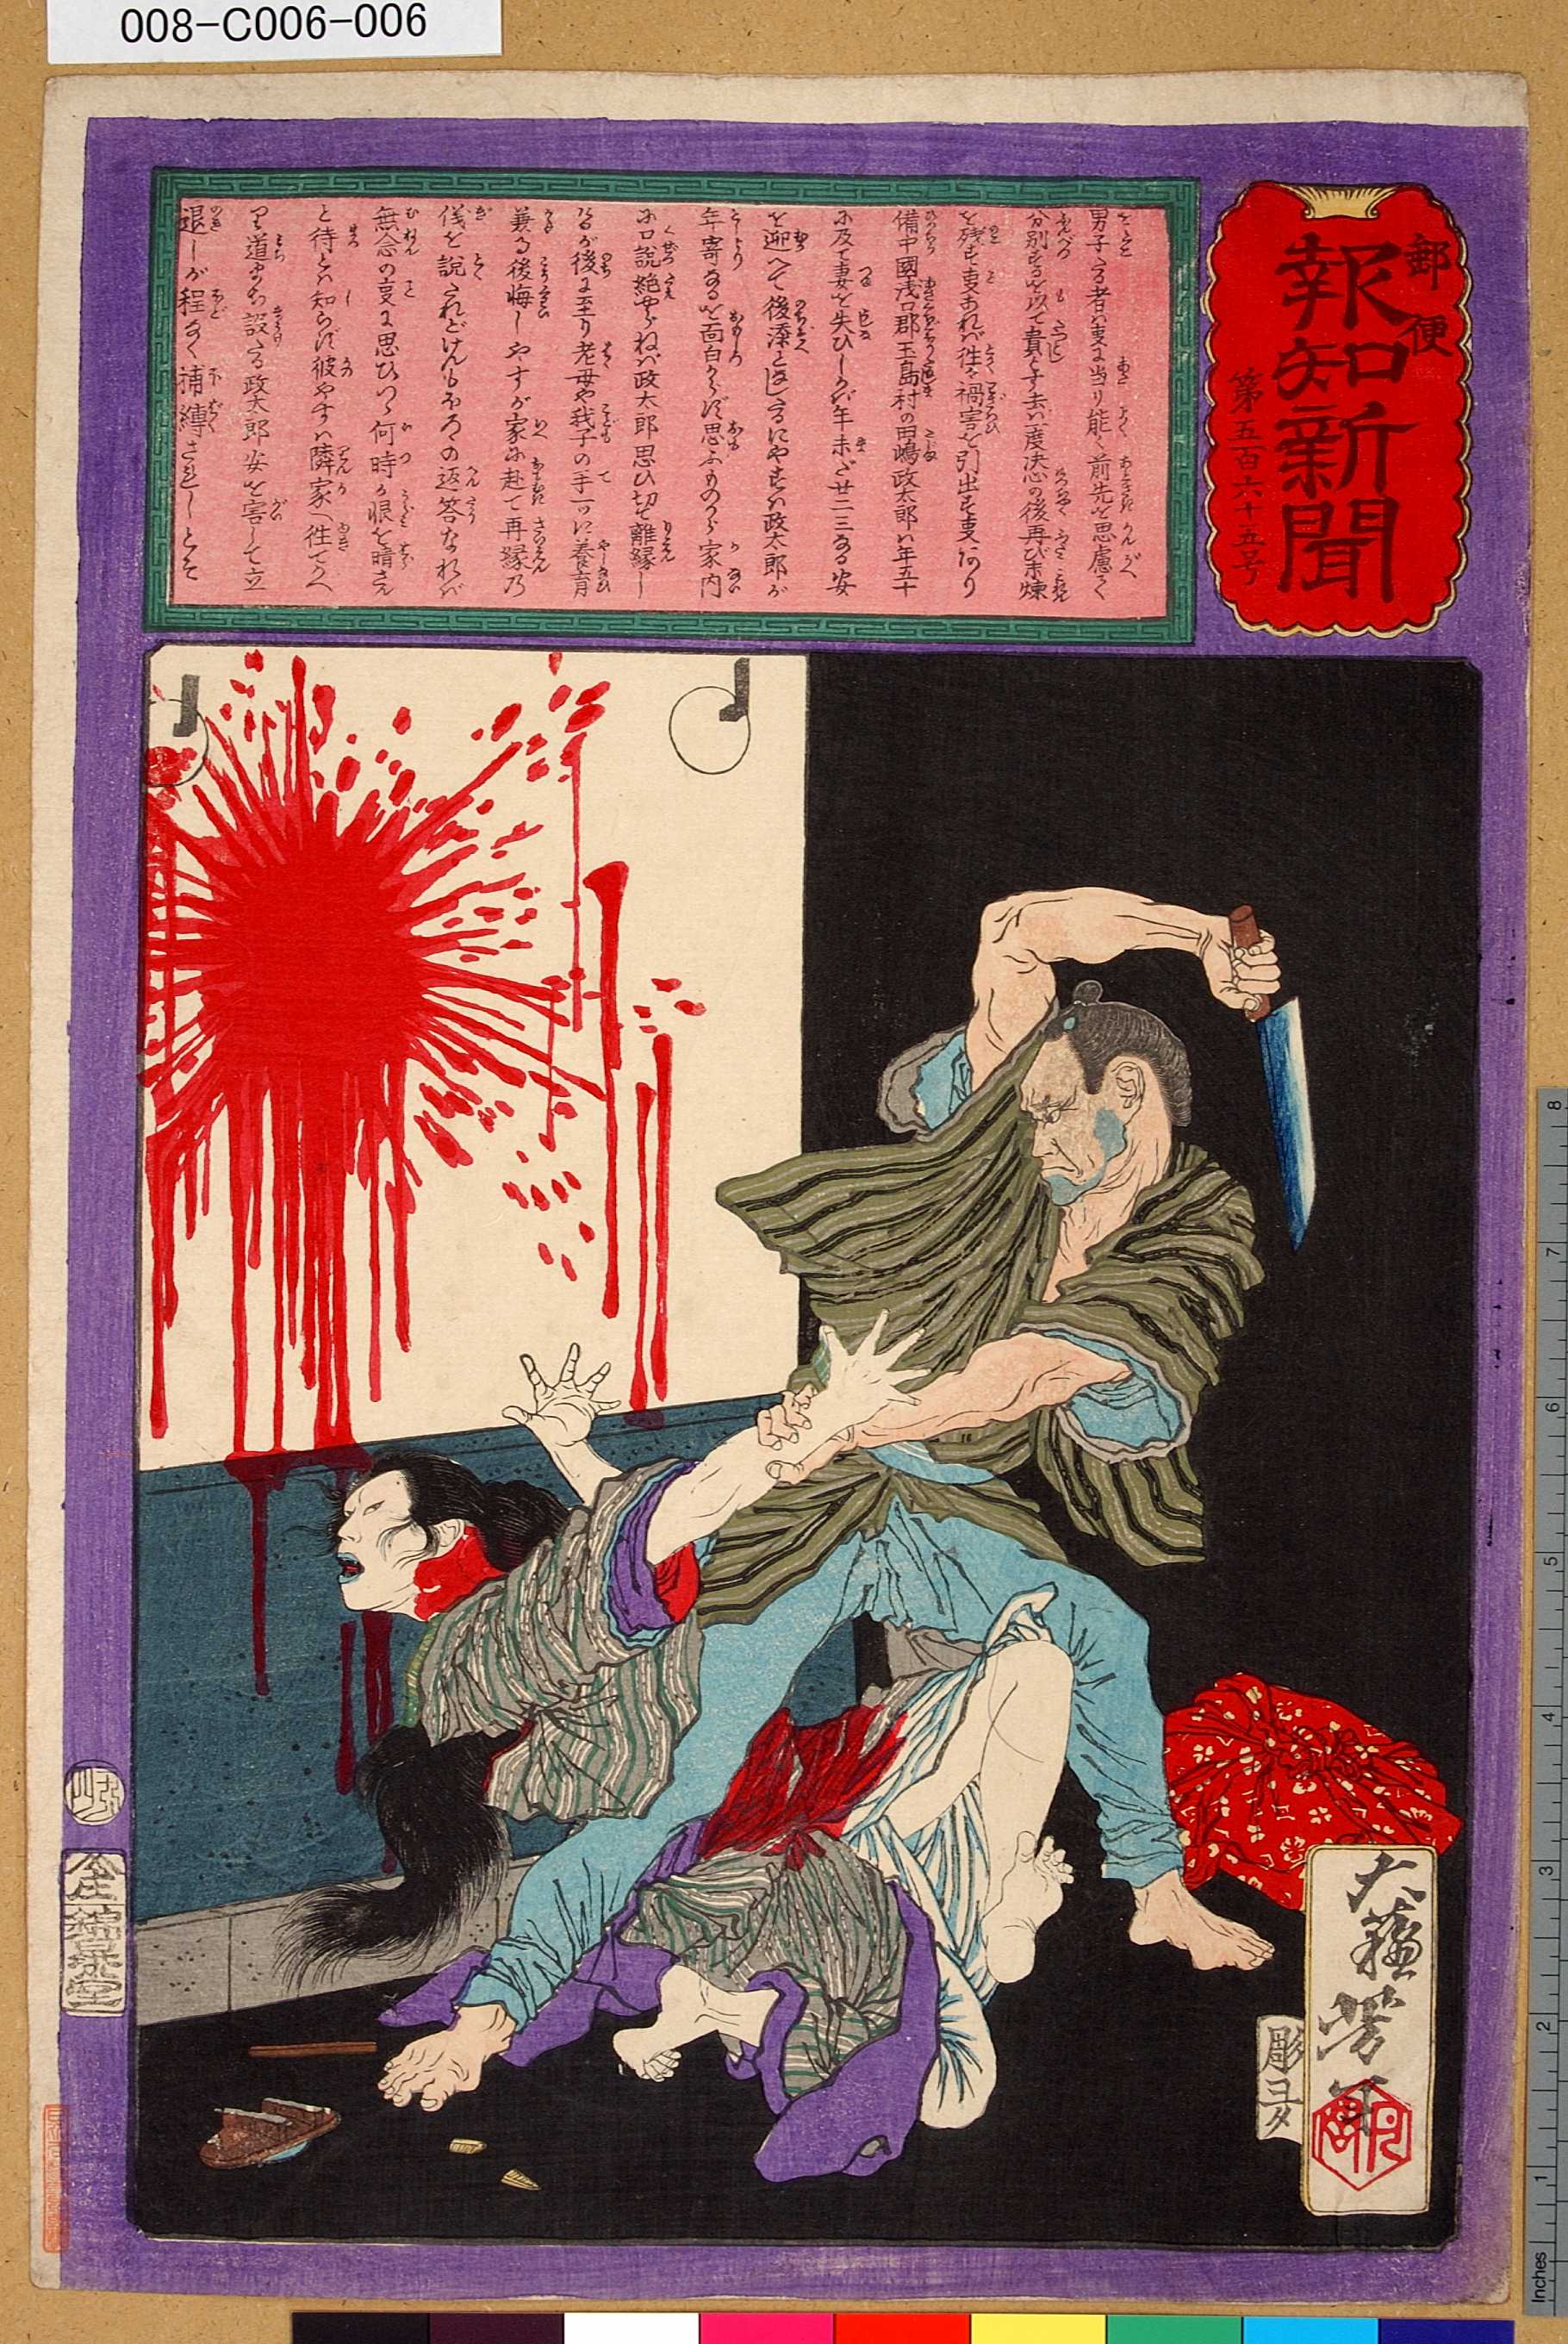 Tsukioka Yoshitoshi: Yubin Hochi Shimbun Newspaper No. 565 - Edo 